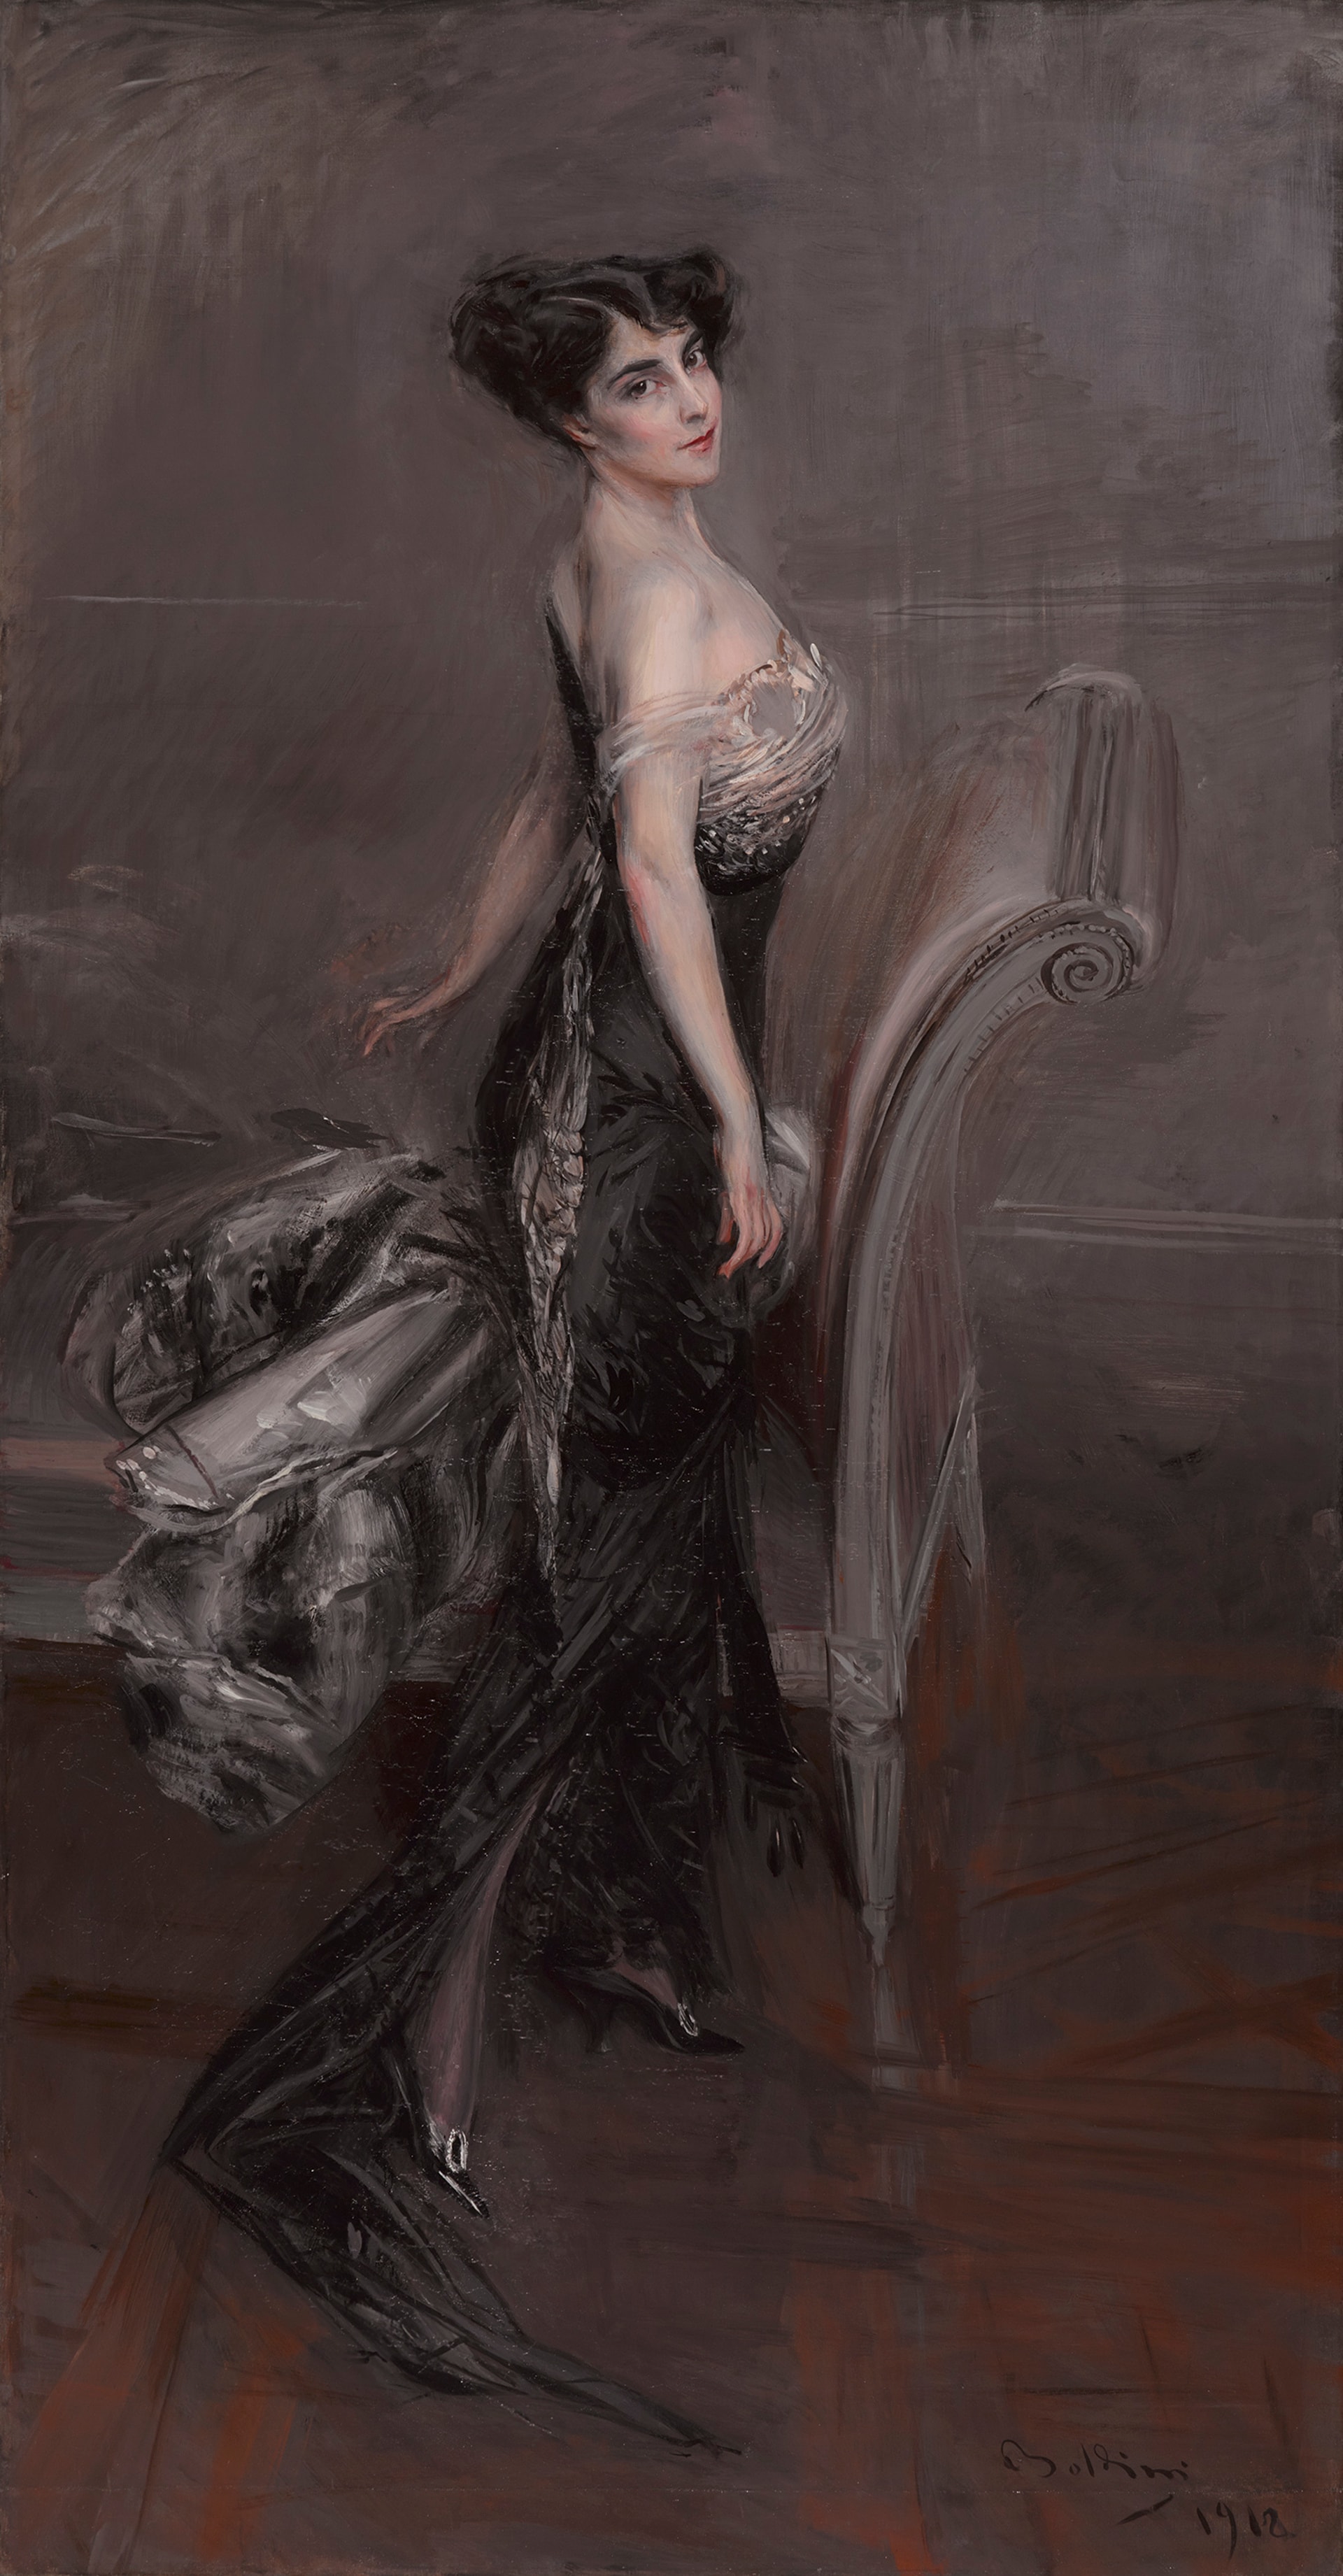 Giovanni Boldini (1842–1931), Ritratto di signora, 1912. Olio su tela, 231.1 x 121.3 cm. Brooklyn Museum, dono anonimo. (Photo: Sarah DeSantis, Brooklyn Museum)